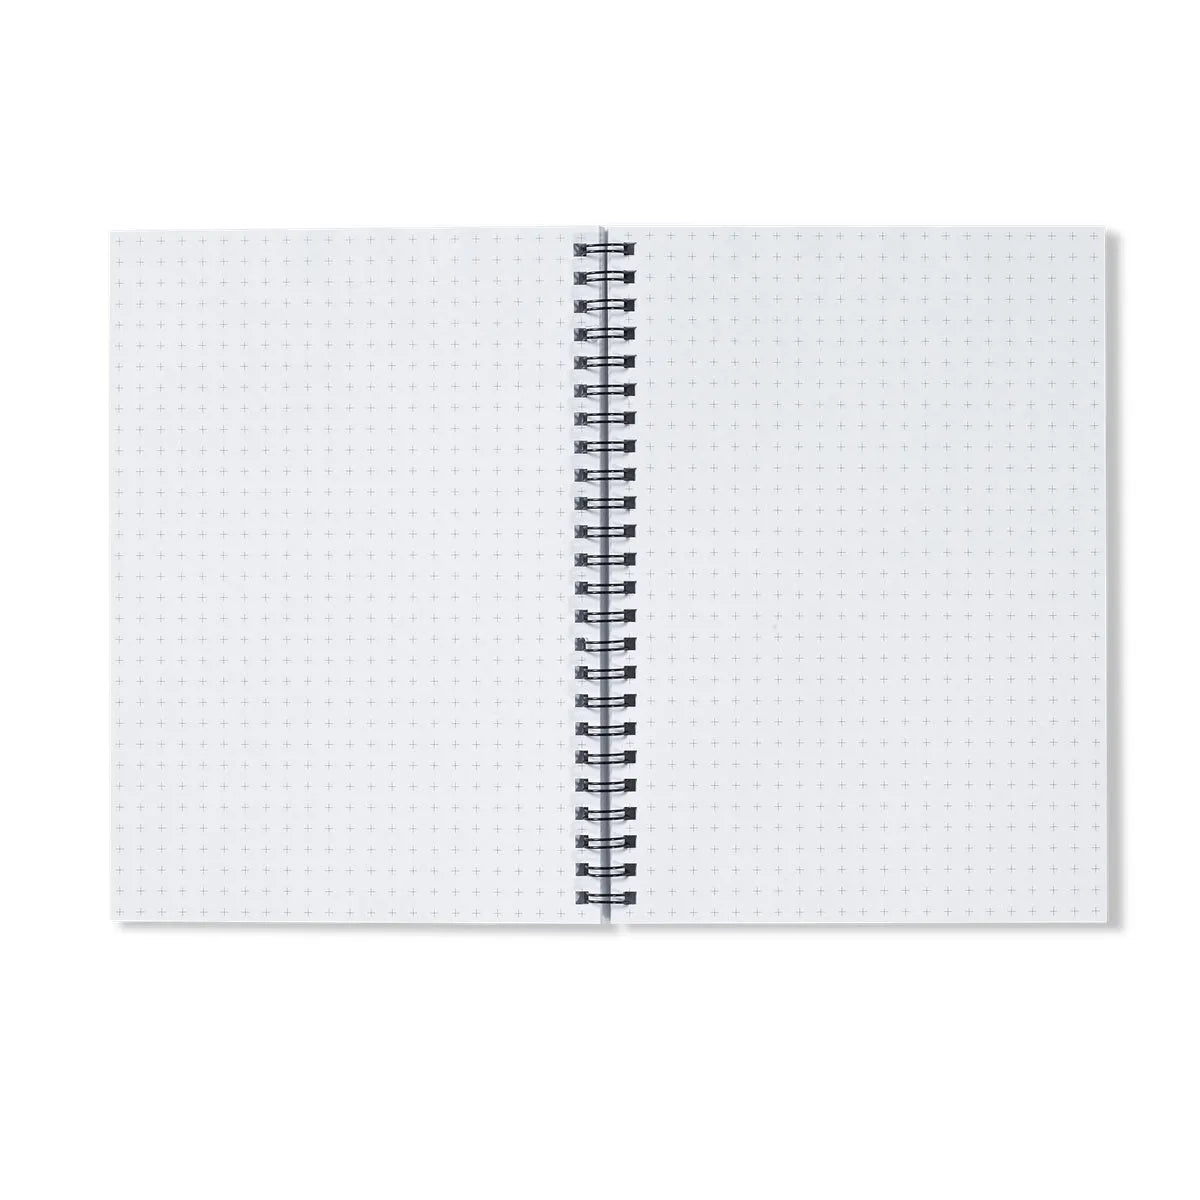 Man’s Best Friend Notebook - Notebooks & Notepads - Aesthetic Art